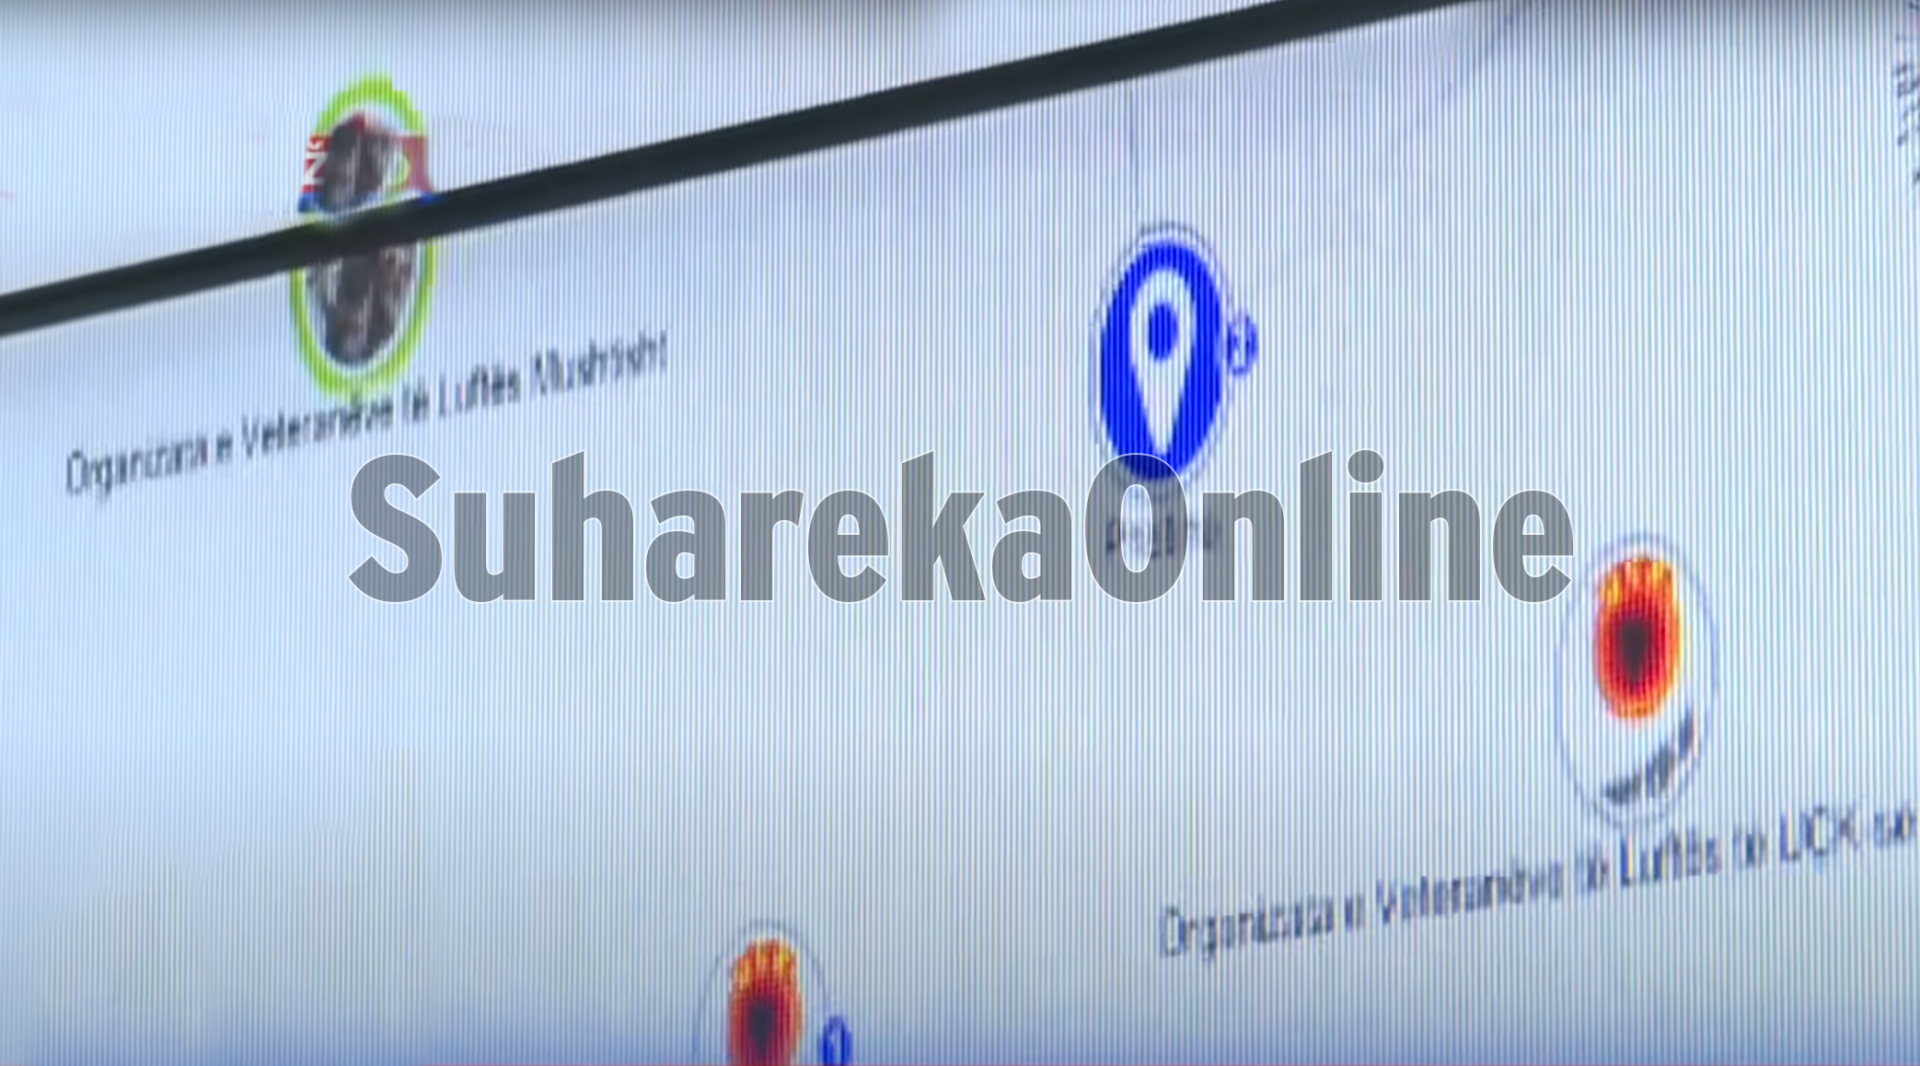 Vuçiq viziton Agjencinë e Sigurisë Ushtarake, në sfond shfaqet databaza me emrin e OVL-së Mushtisht